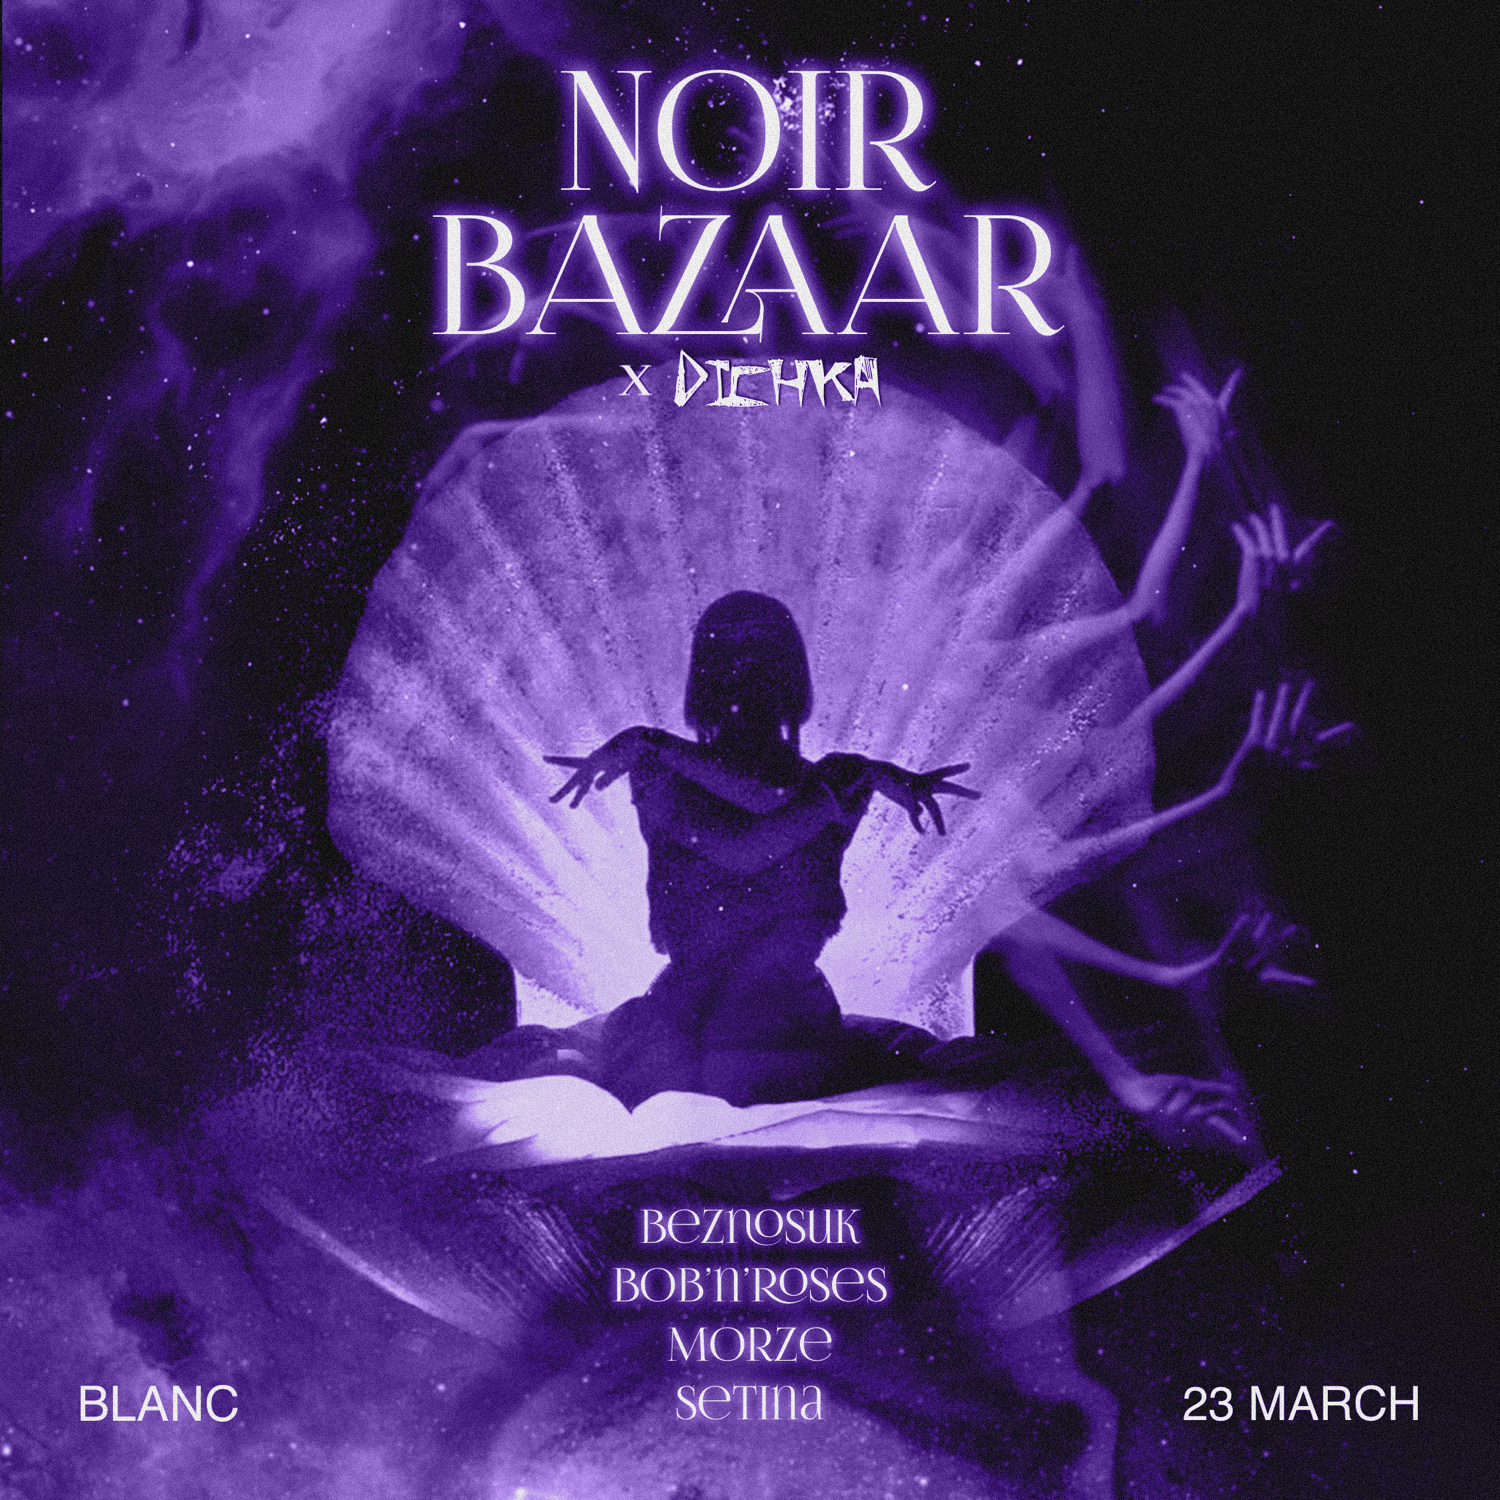 Noir Bazaar x Dichka - フライヤー表